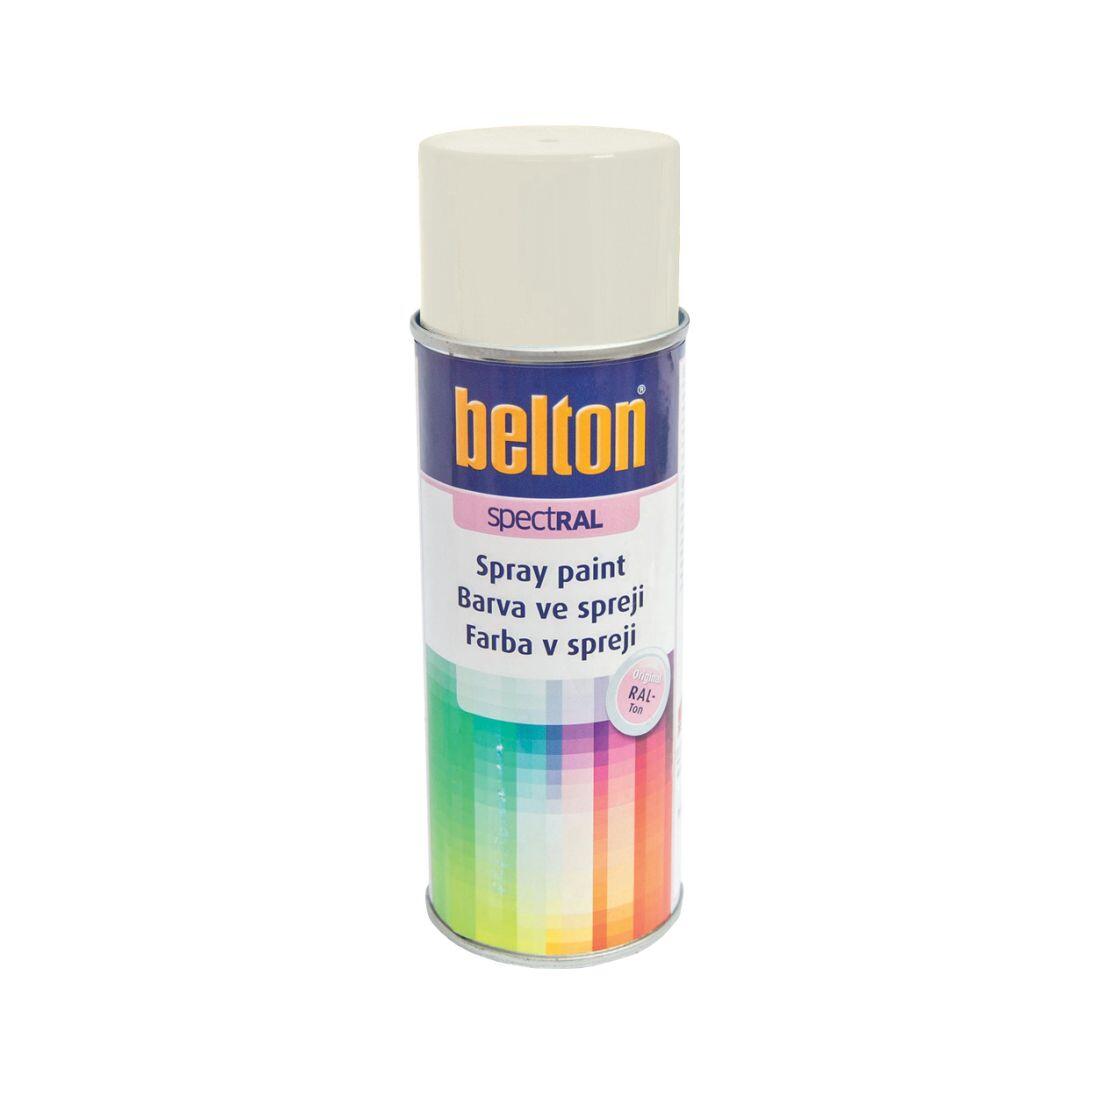 barva ve spreji BELTON RAL 9010, 400ml BÍ 0.31 Kg MAXMIX Sklad14 825130 20